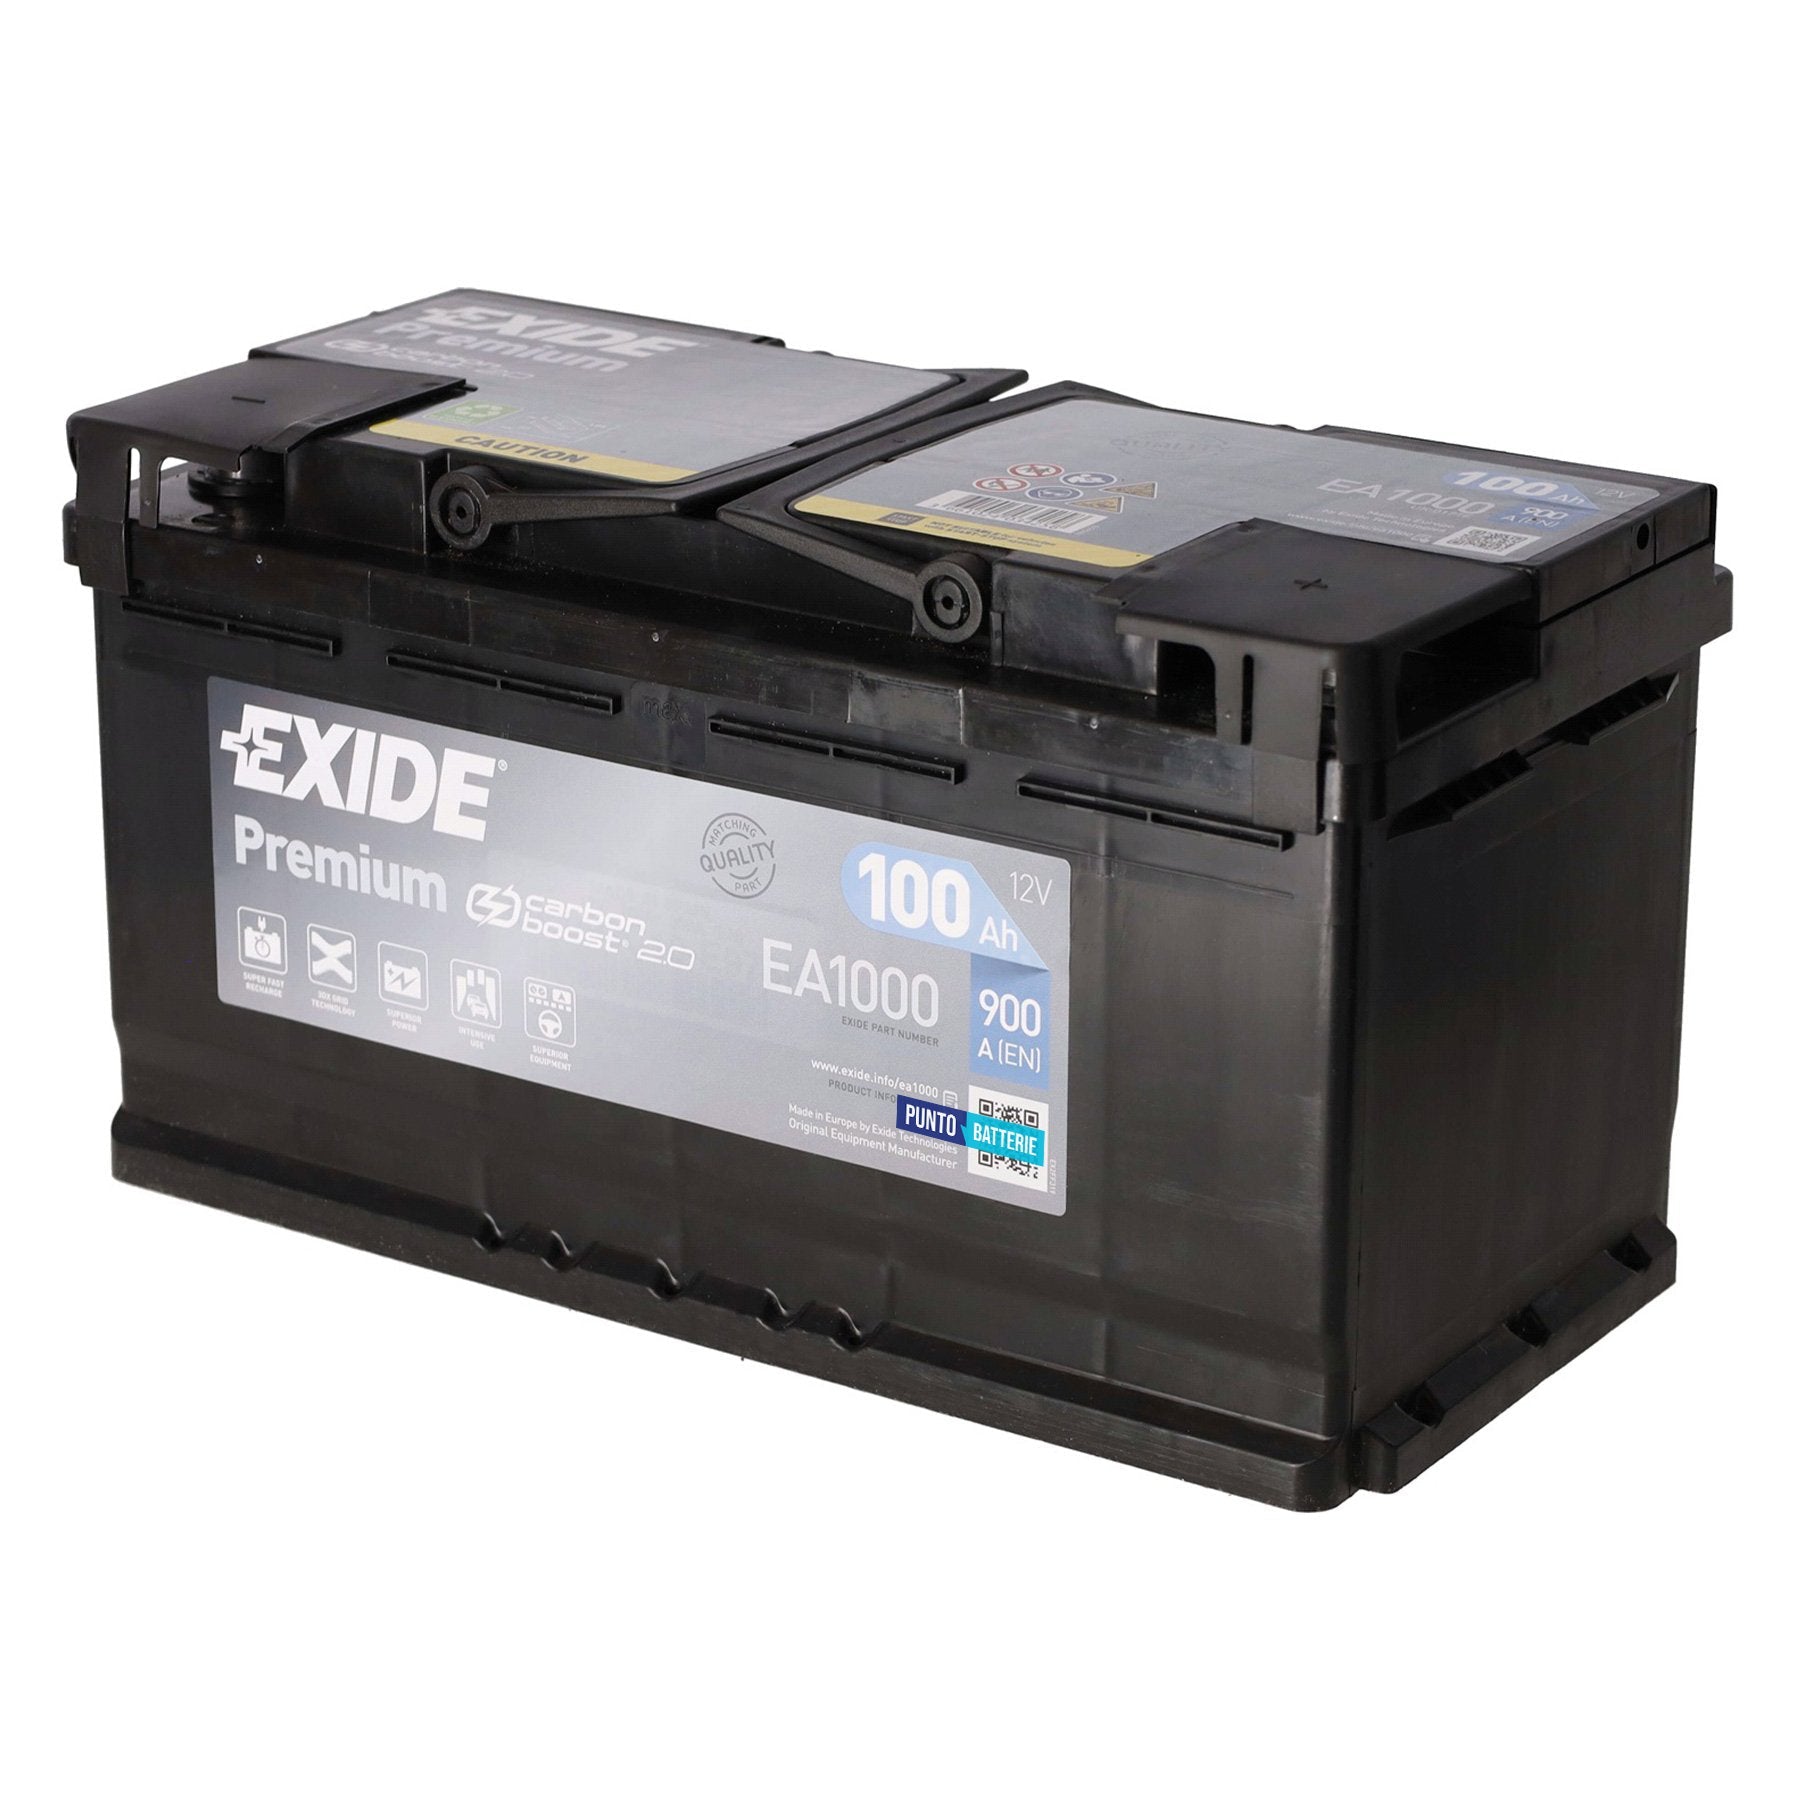 Batteria originale Exide Premium EA1000, dimensioni 353 x 175 x 190, polo positivo a destra, 12 volt, 100 amperora, 900 ampere. Batteria per auto e veicoli leggeri.